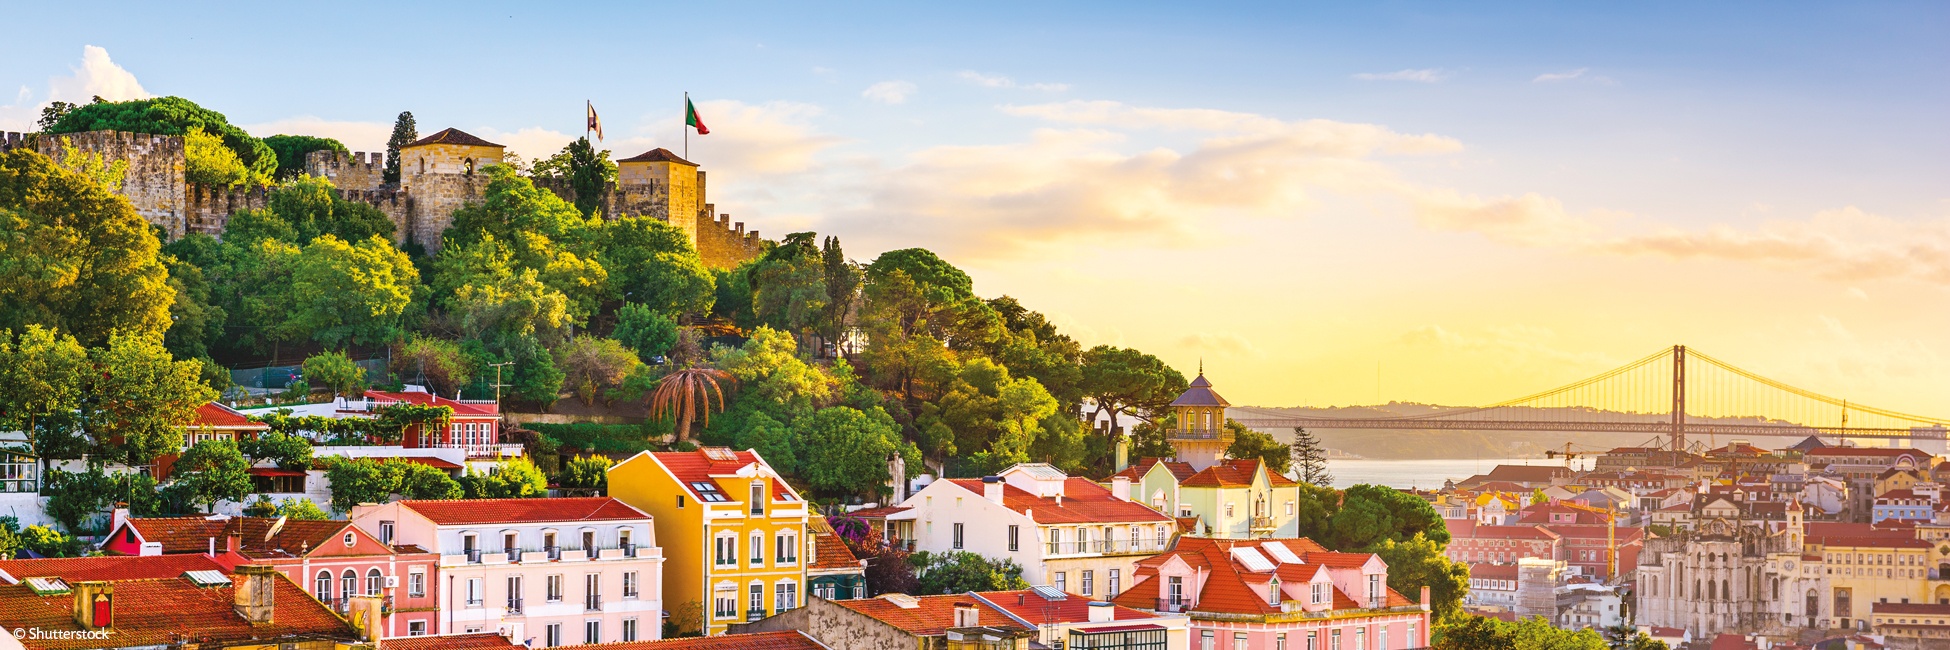 POI_PPETE - Lisboa y Oporto: la magia del Duero